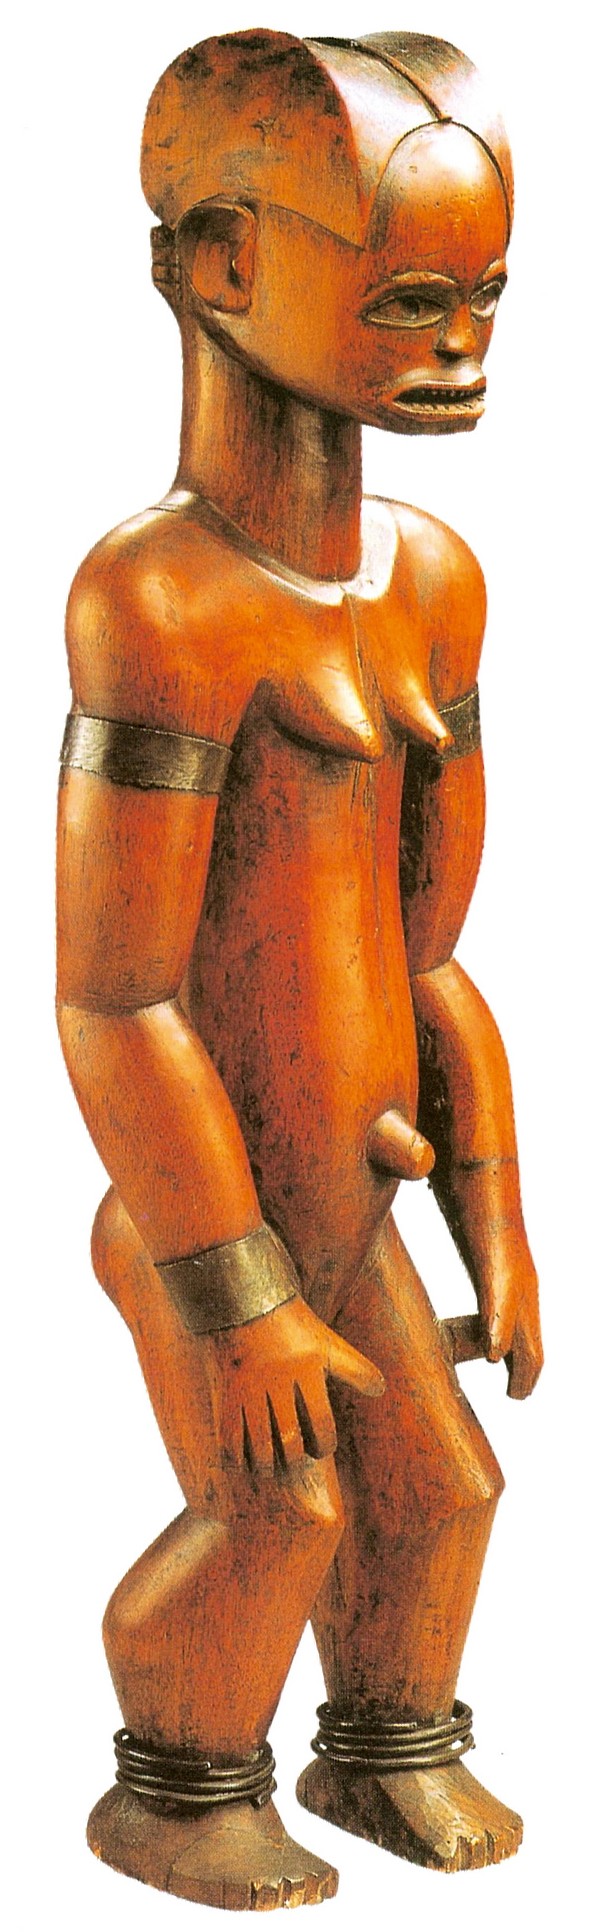 祖先雕像